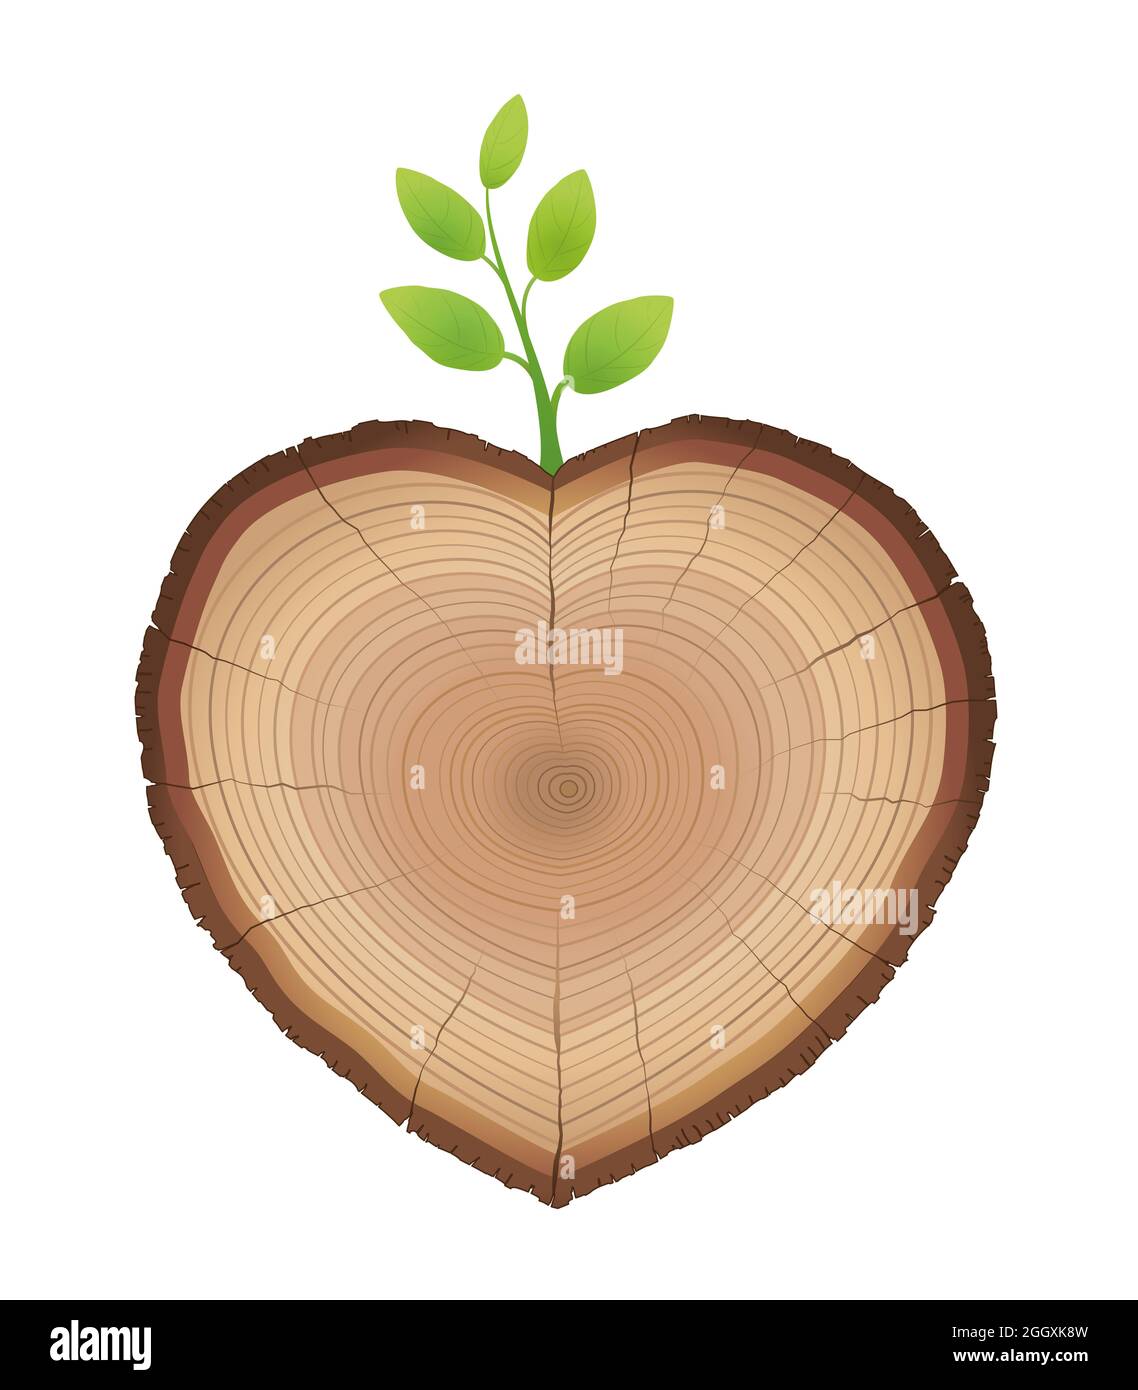 Baumschnitt, herzförmig, aus dem junger Sproß wächst - Holzstamm mit grünem Zweig - Symbol für die Liebe zu Natur und Wachstum. Stockfoto